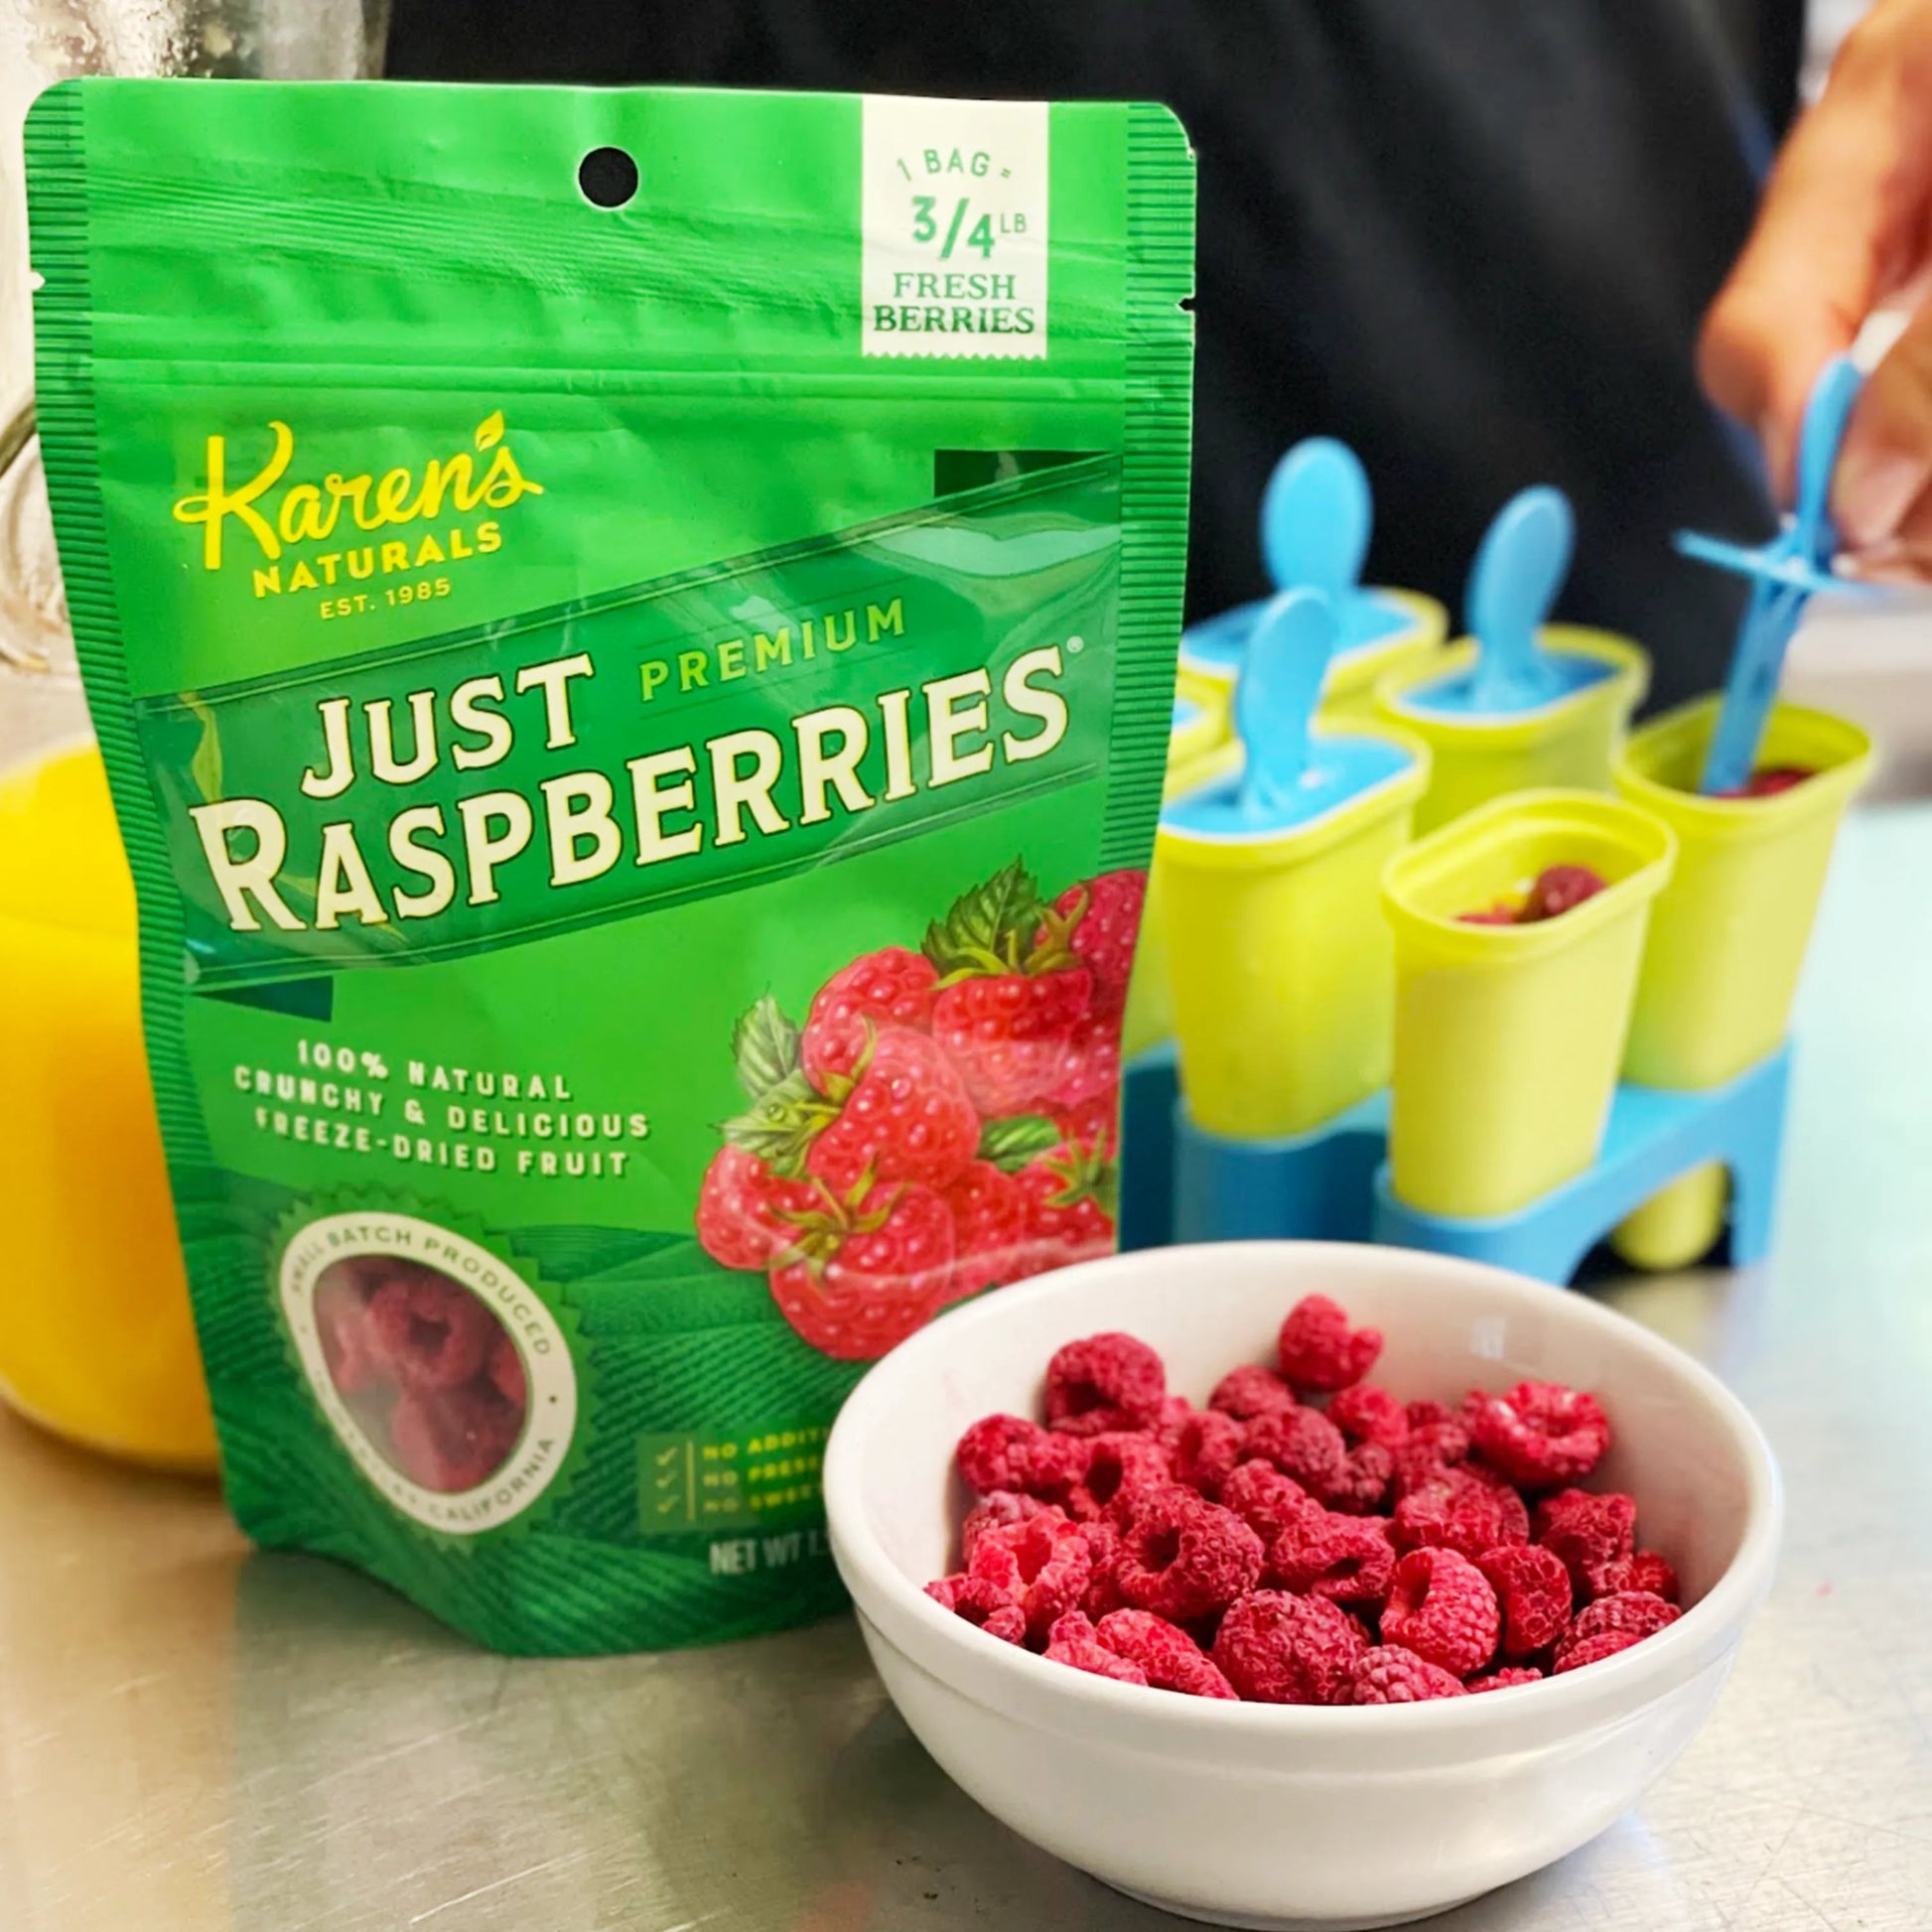 Just Raspberries - Karen's Naturals